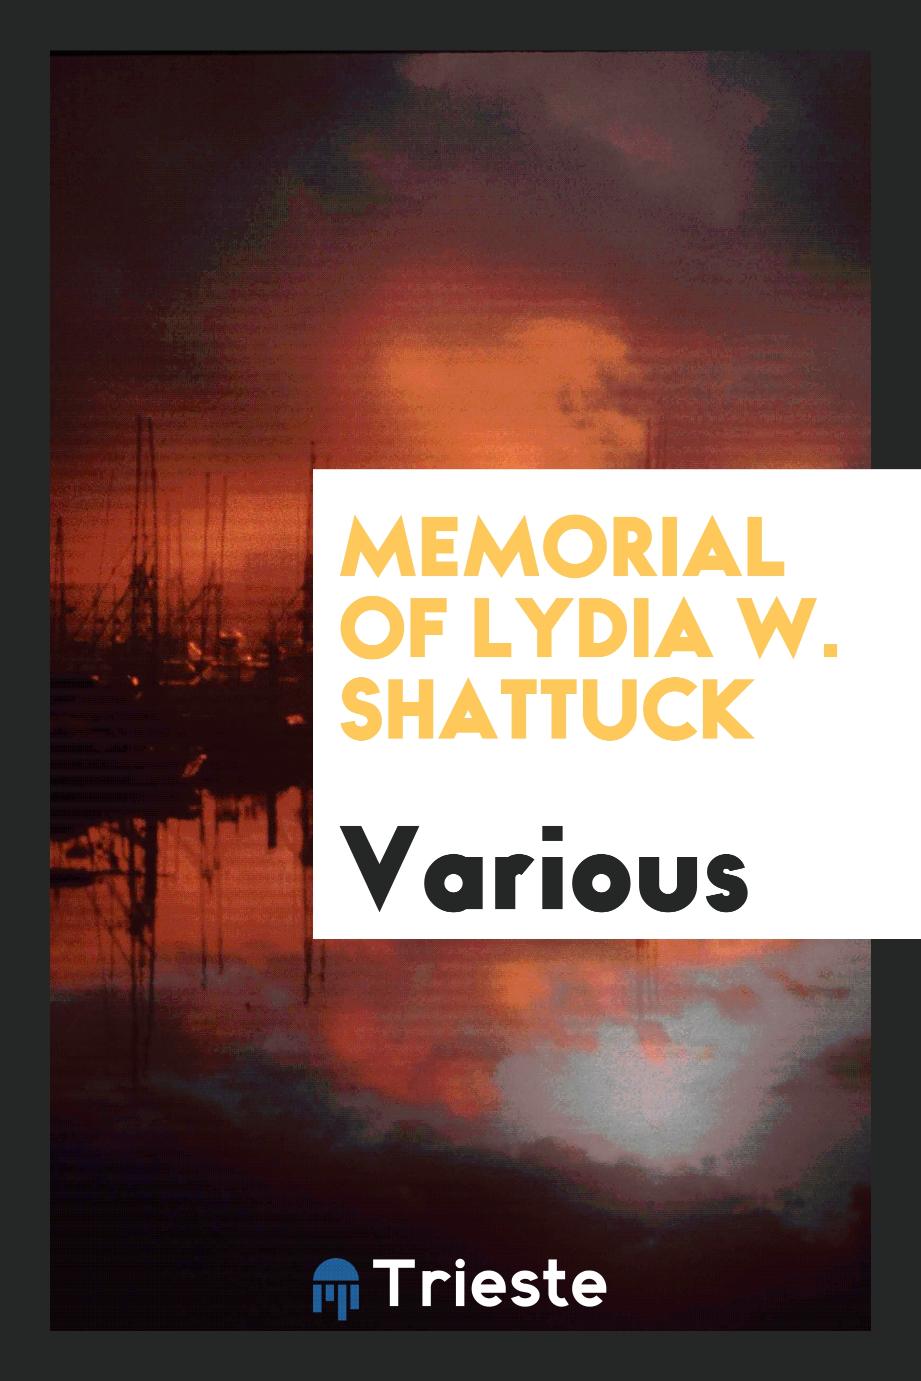 Memorial of Lydia W. Shattuck